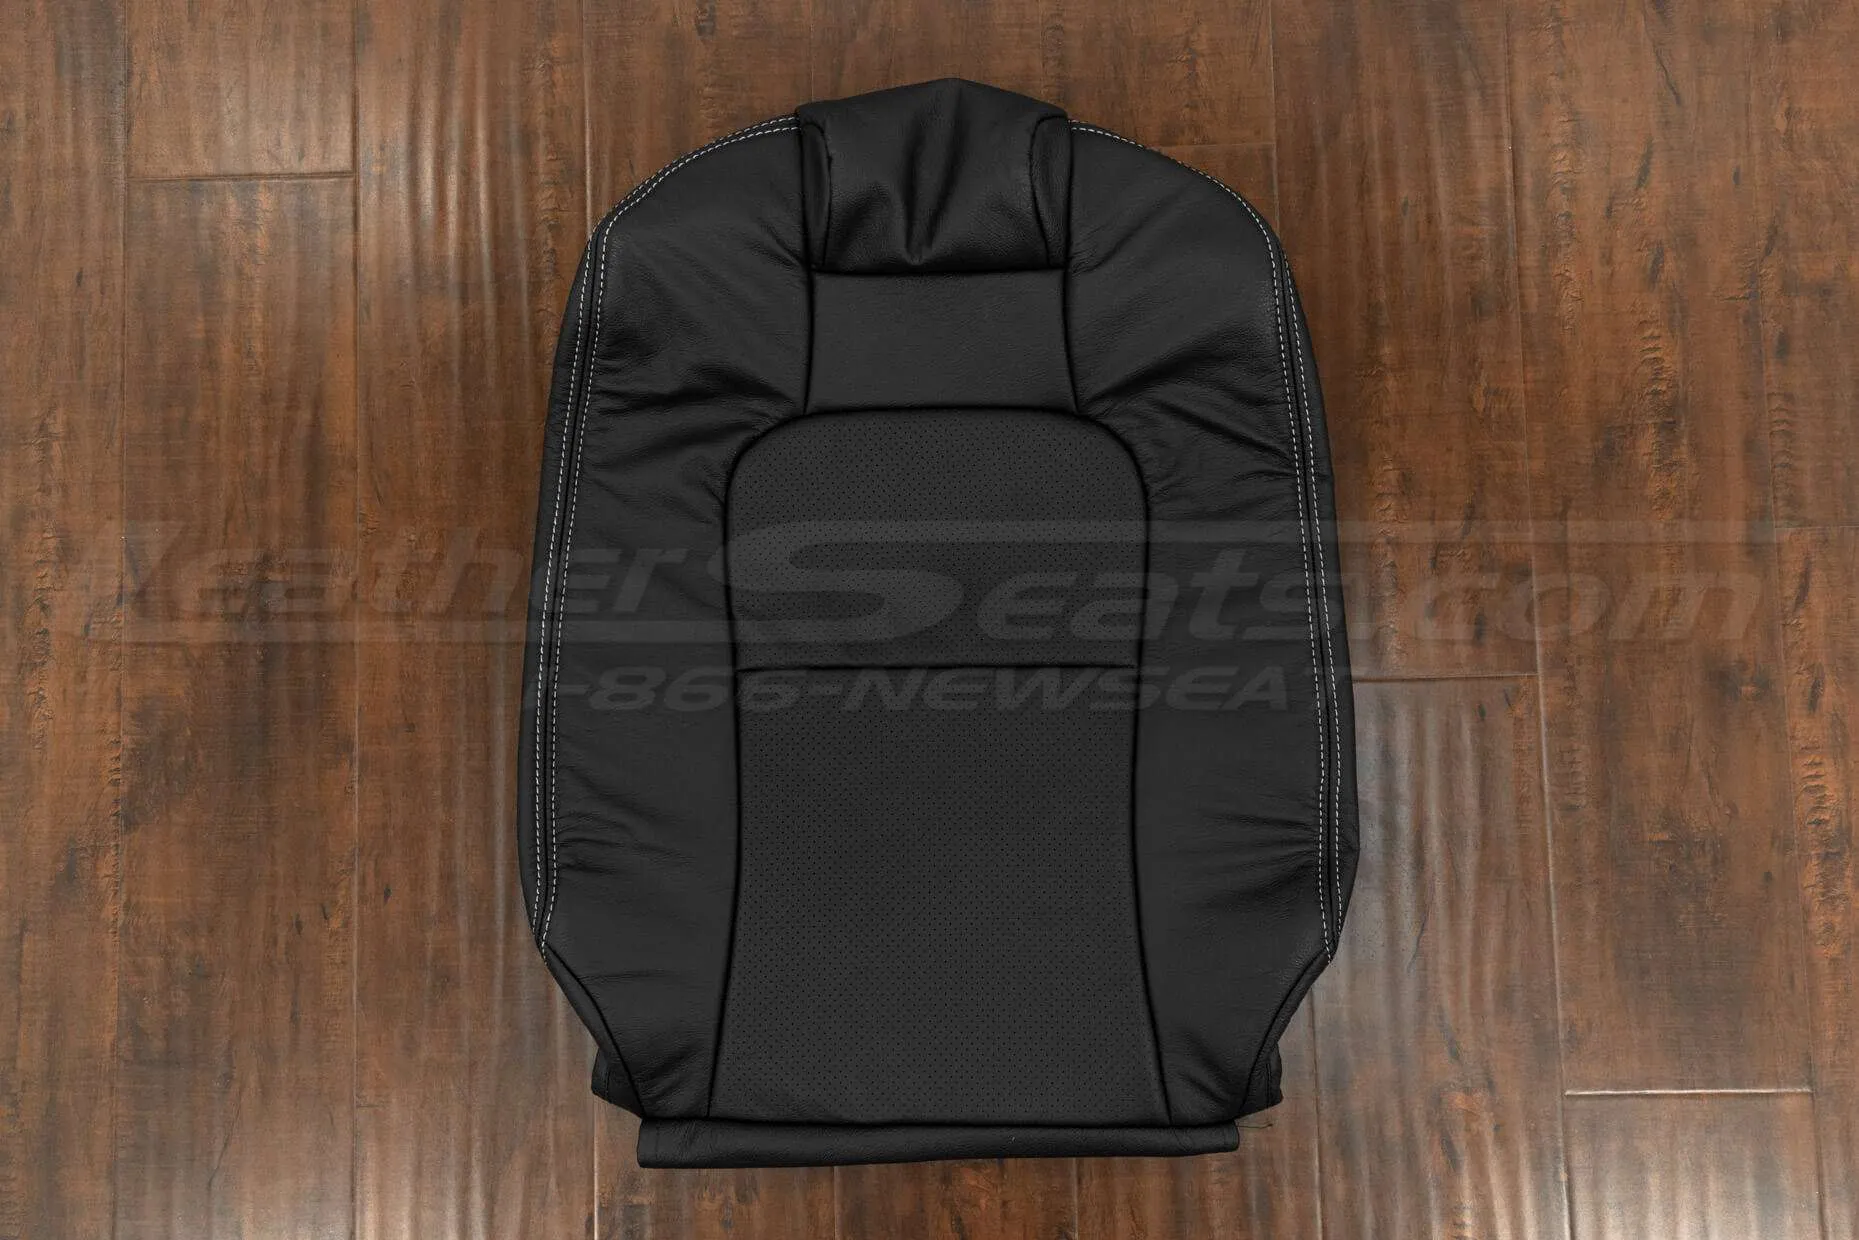 Lexus SC300/400 Front backrest upholstery in Black